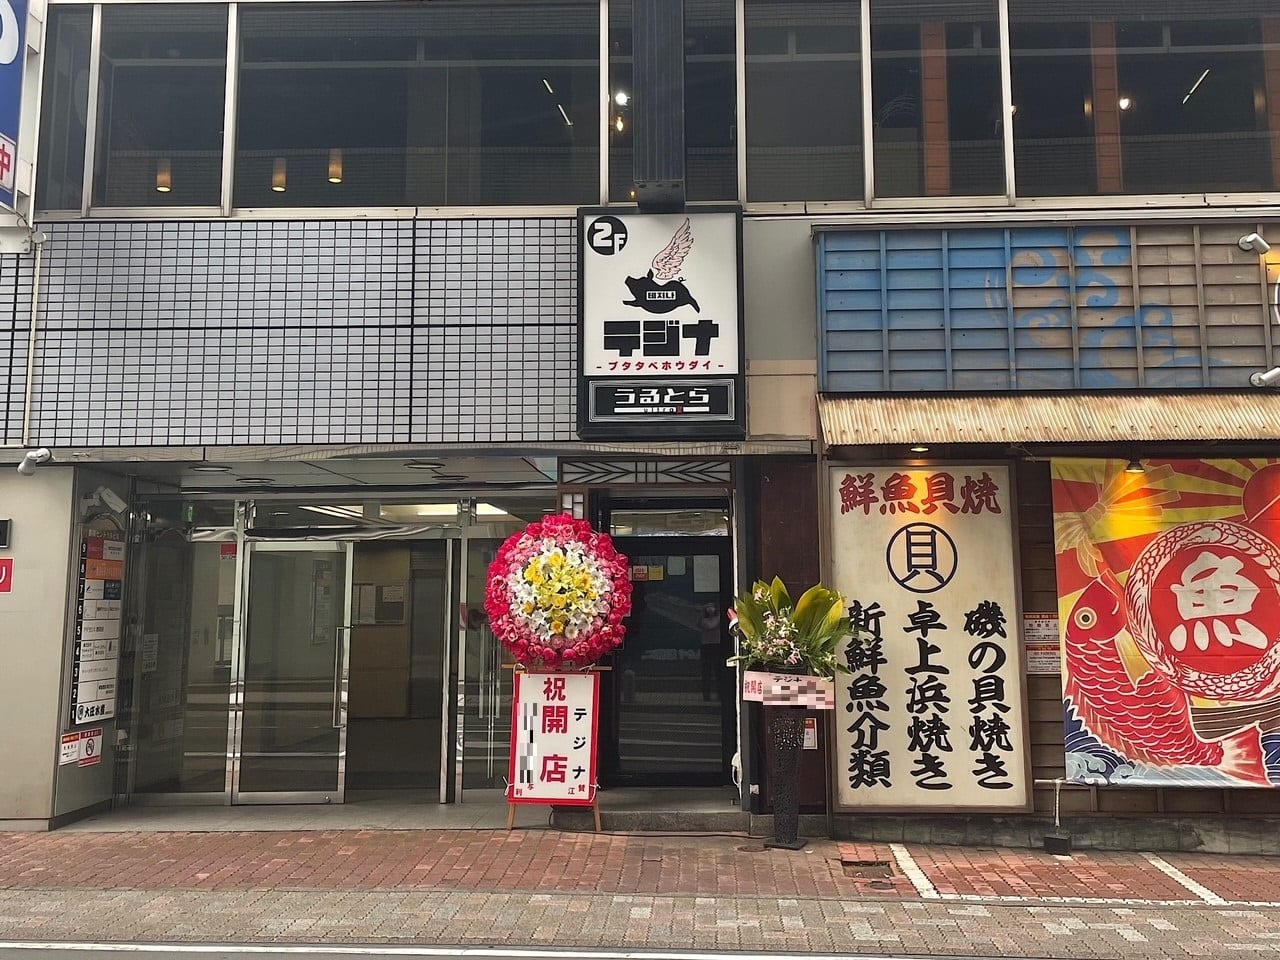 6月13日（金）サムギョプサル食べ放題のお店がオープンしました